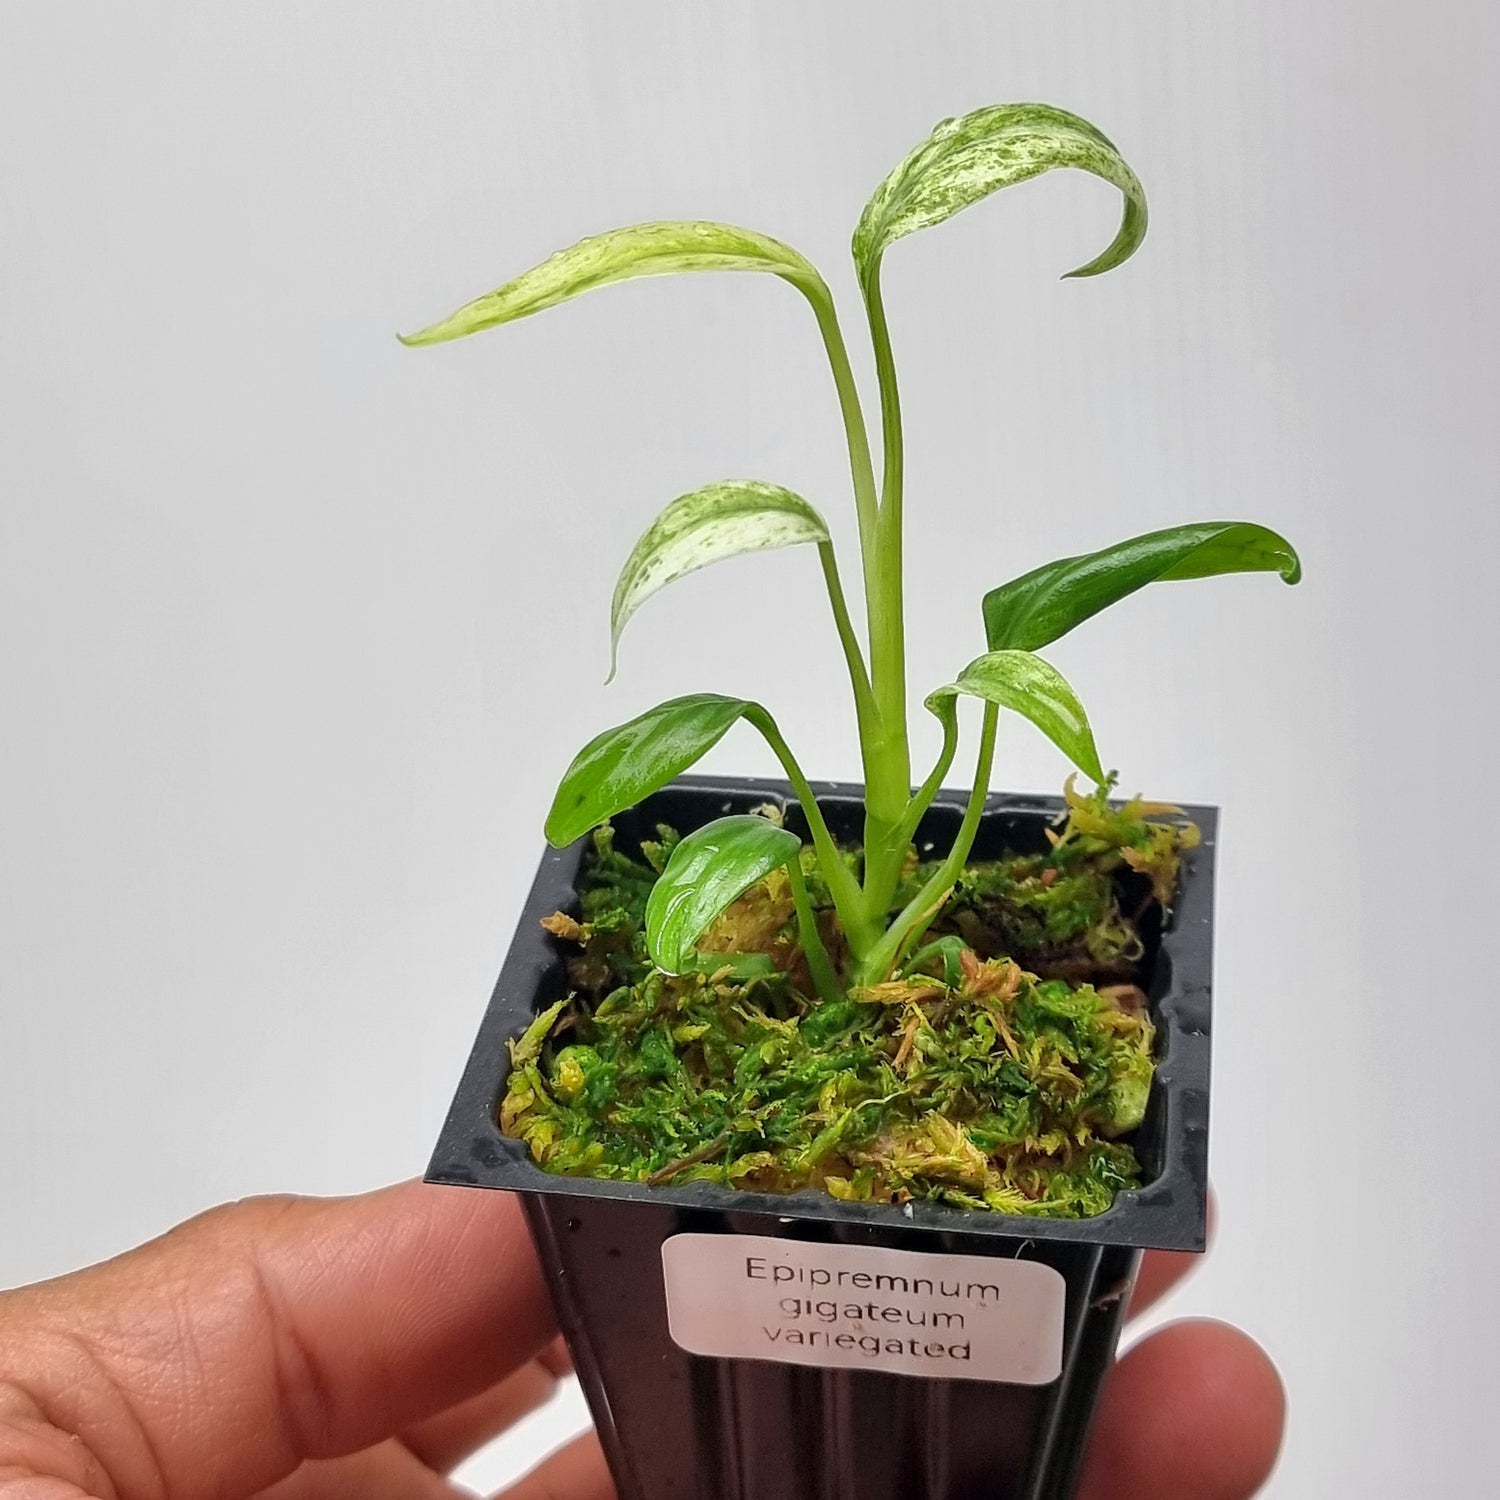 rare Epipremnum giganteum variegated for sale in Perth Australia